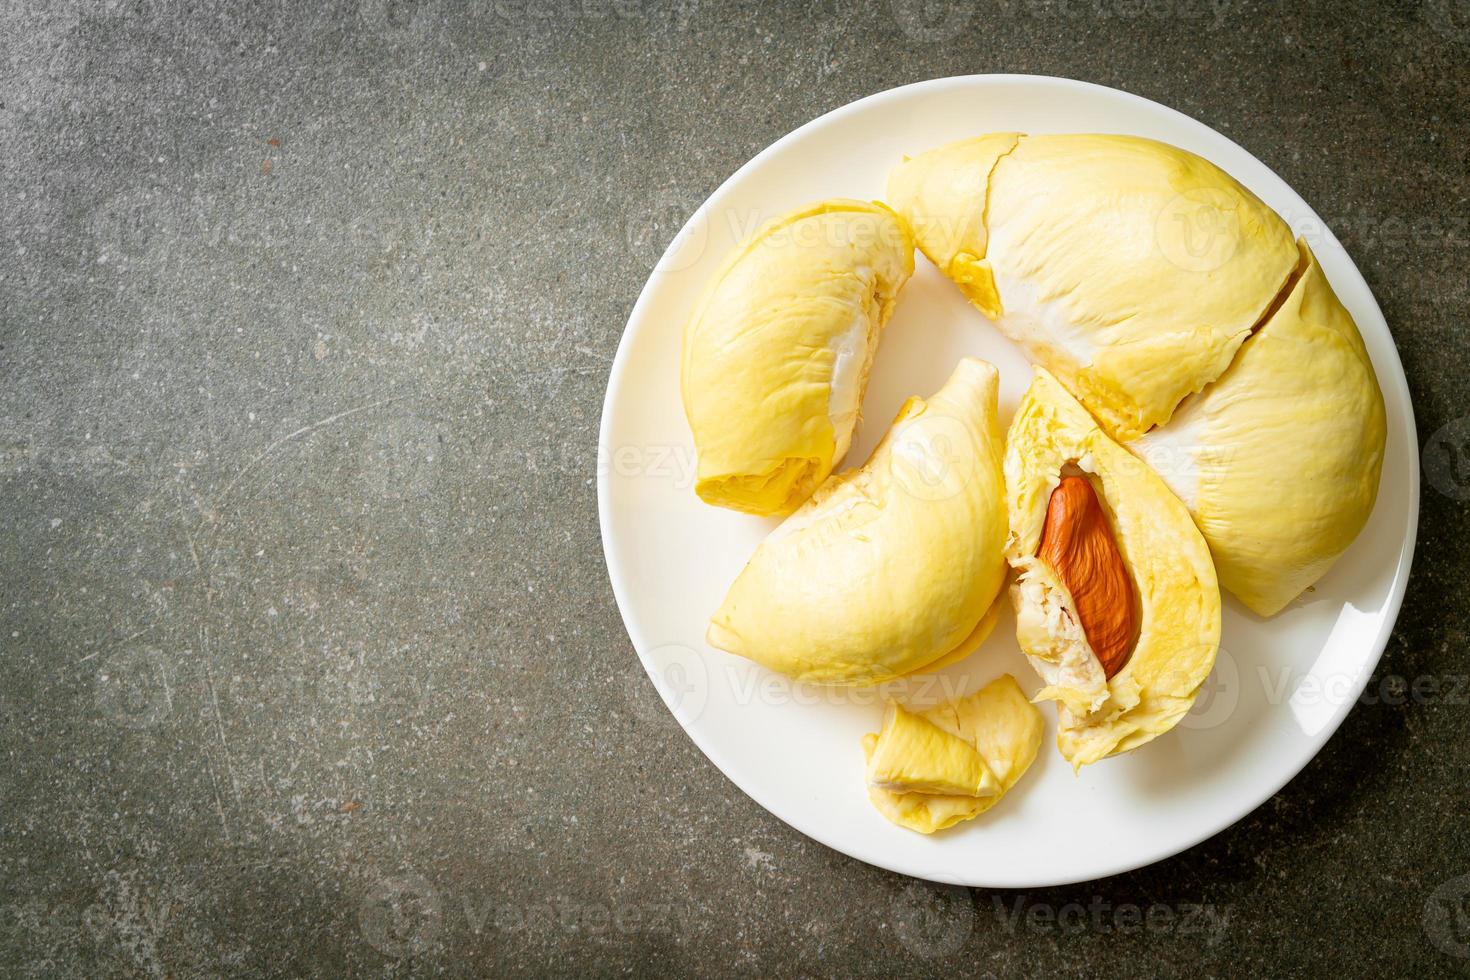 durian maduro e fresco, casca de durian em prato branco foto